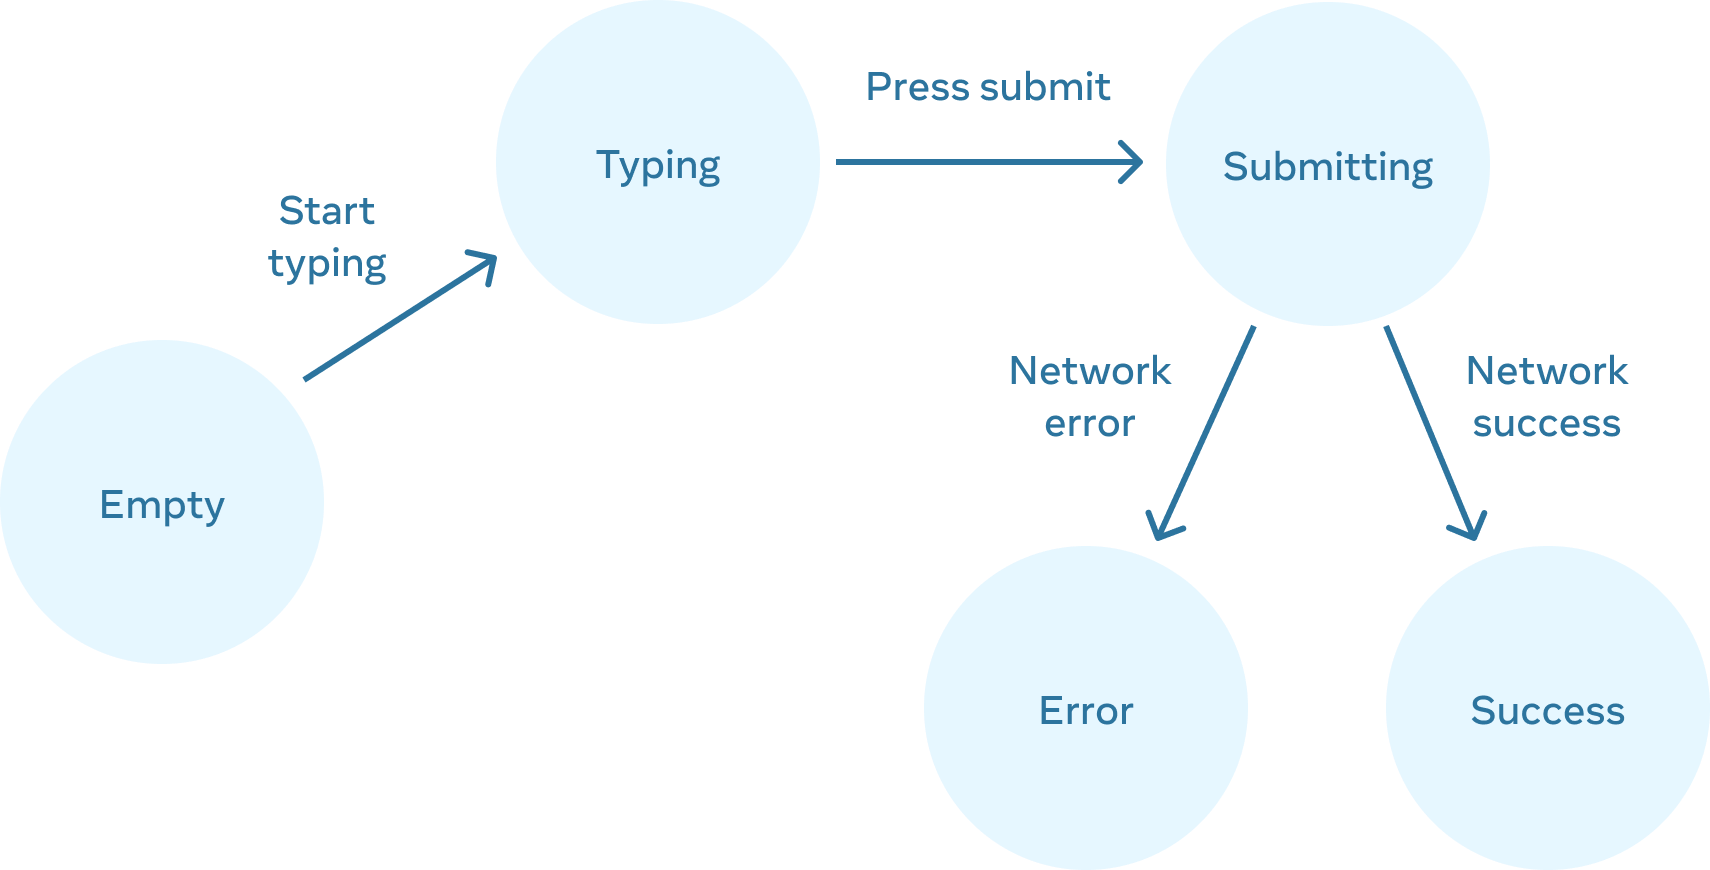 Fluxograma movendo-se da esquerda para a direita com 5 nós. O primeiro nó rotulado como 'empty' (vazio) tem uma borda rotulada como 'start typing' (comece a digitar) conectada a um nó rotulado como 'typing' (digitando). Esse nó tem uma borda chamada 'press submit' (pressione enviar) conectada a um nó chamado 'submitting' (enviando), que tem duas bordas. A borda esquerda é rotulada como 'network error' (error de rede), conectada a um nó rotulado como 'error' (error). A borda direita é rotulada como 'network success' (sucesso de rede) e se conecta a um nó rotulado como 'success' (sucesso).